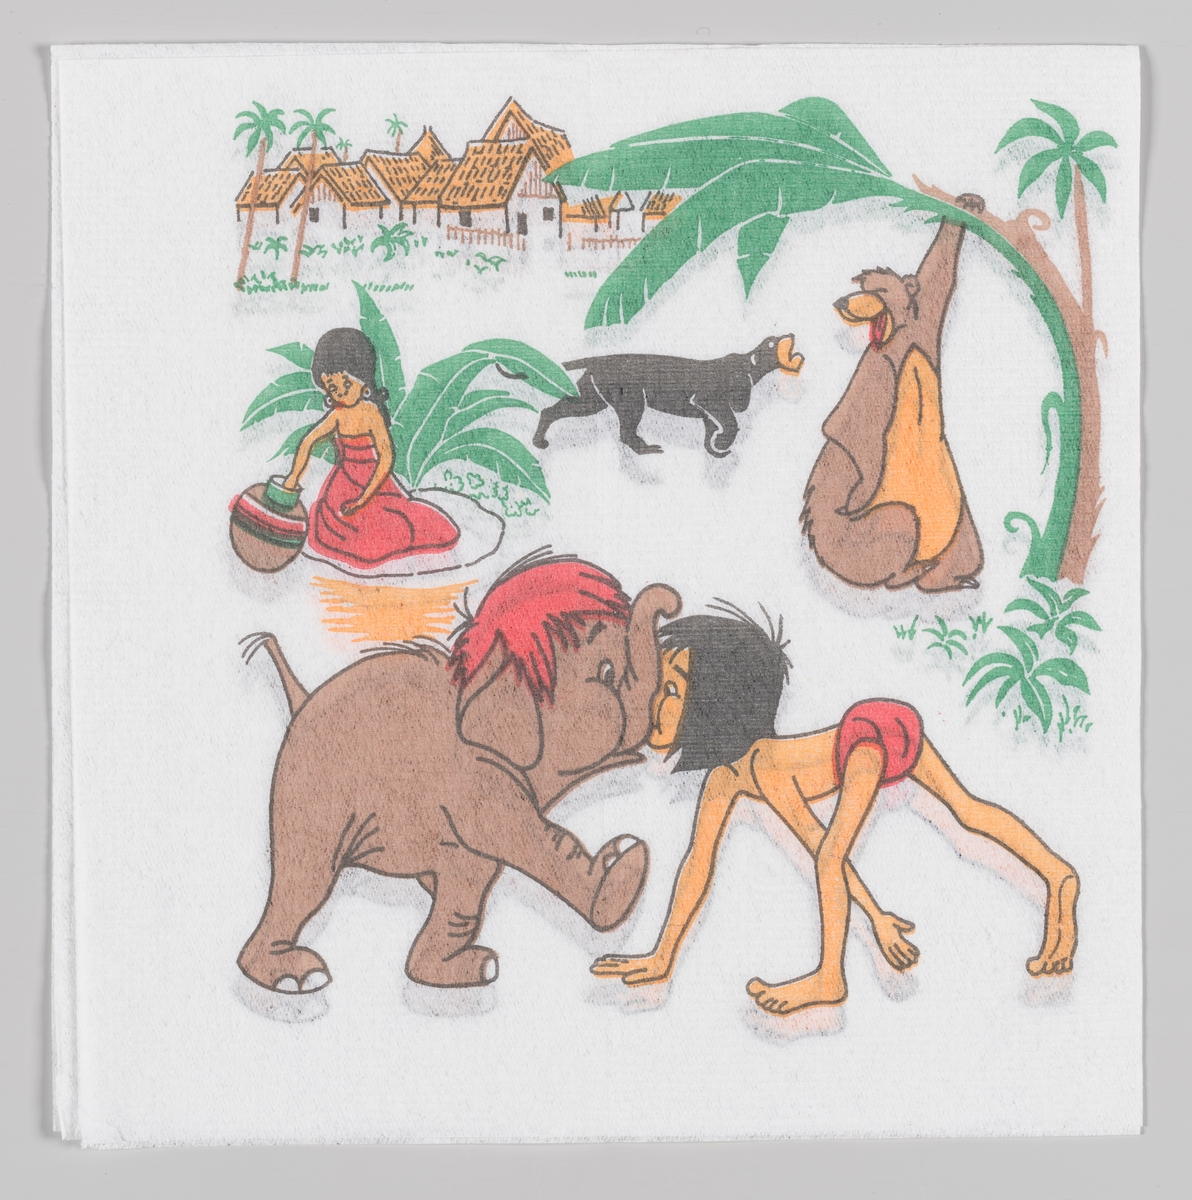 Mowgli og elefantungen støtter sammen nese mot snabbel. I bakgrunnen bjørnen Baloo, den sorte panter Bagheera og en jente fra landsbyen.

Walt Disneys animasjonsfilm Jungelboken kom i 1967.

Samme motiv på serviett MIA.00007-003-0154.